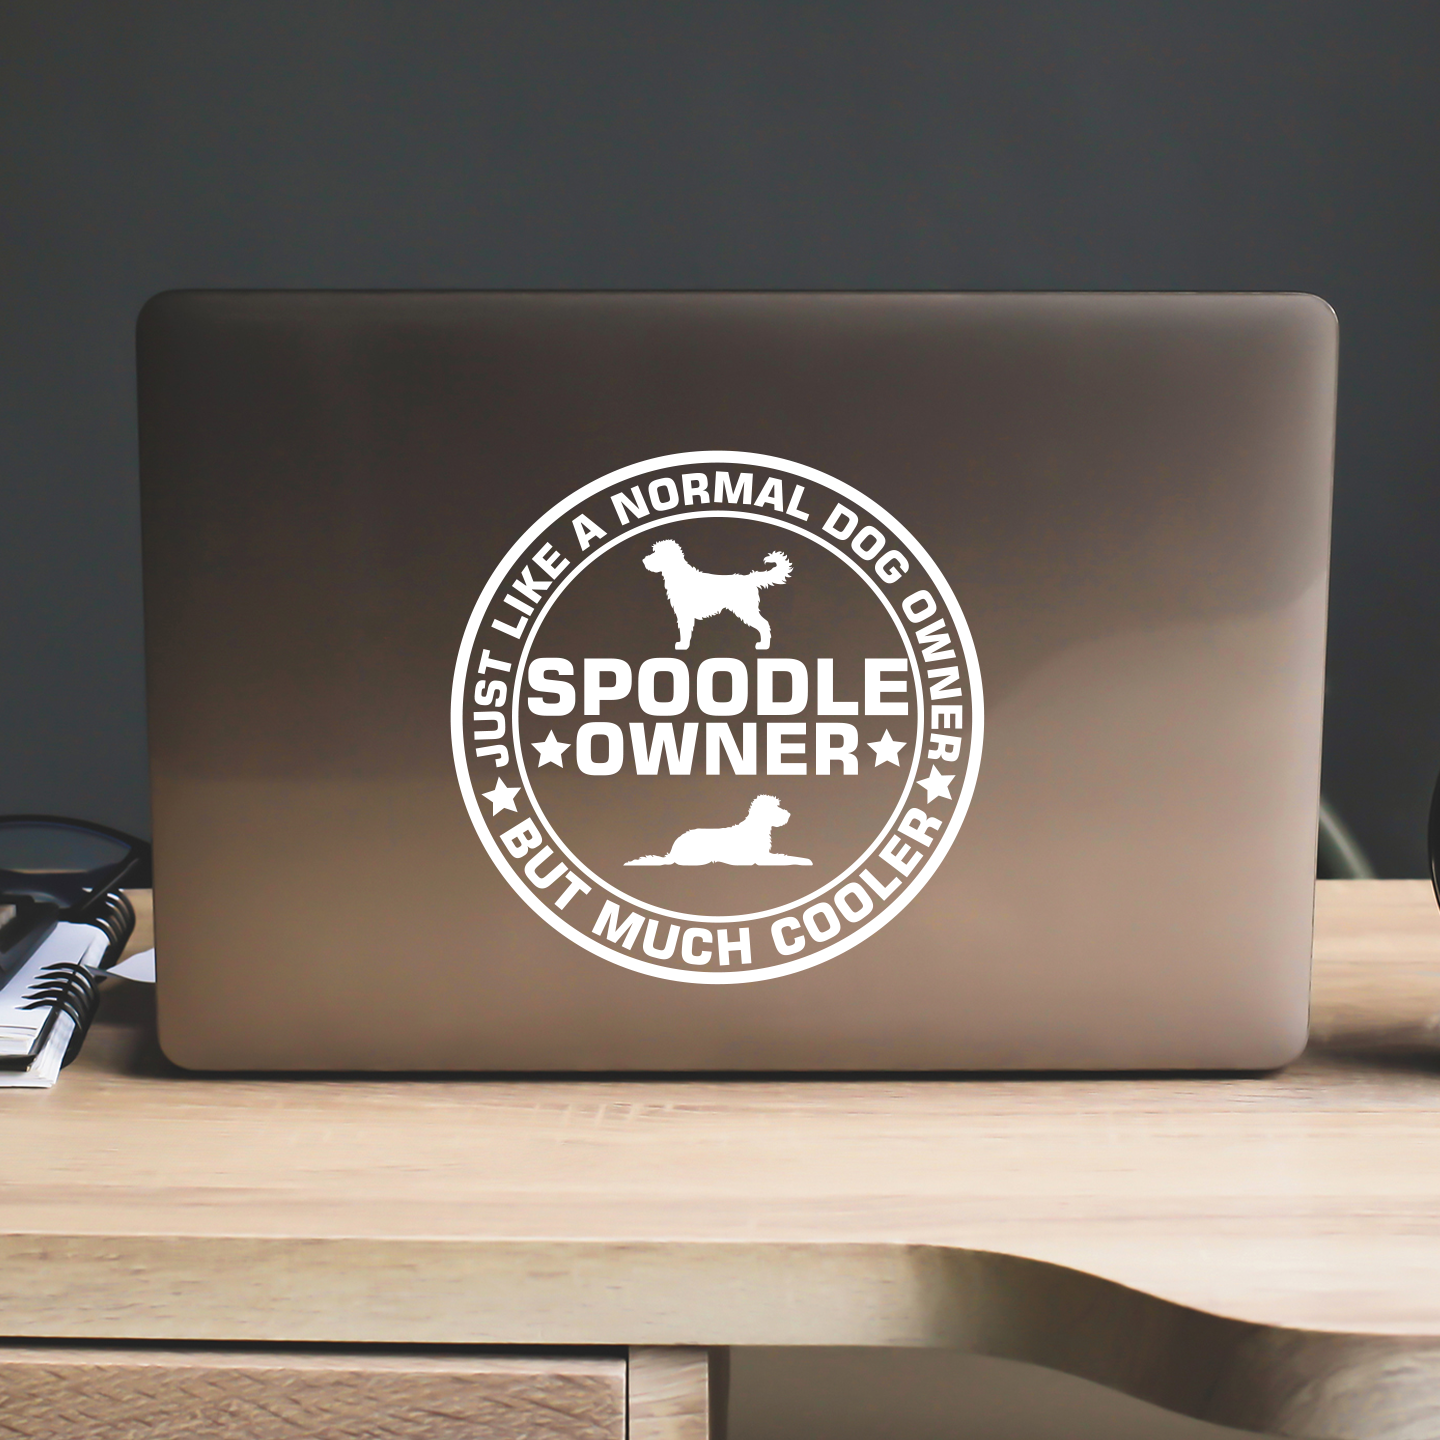 Spoodle Owner Sticker